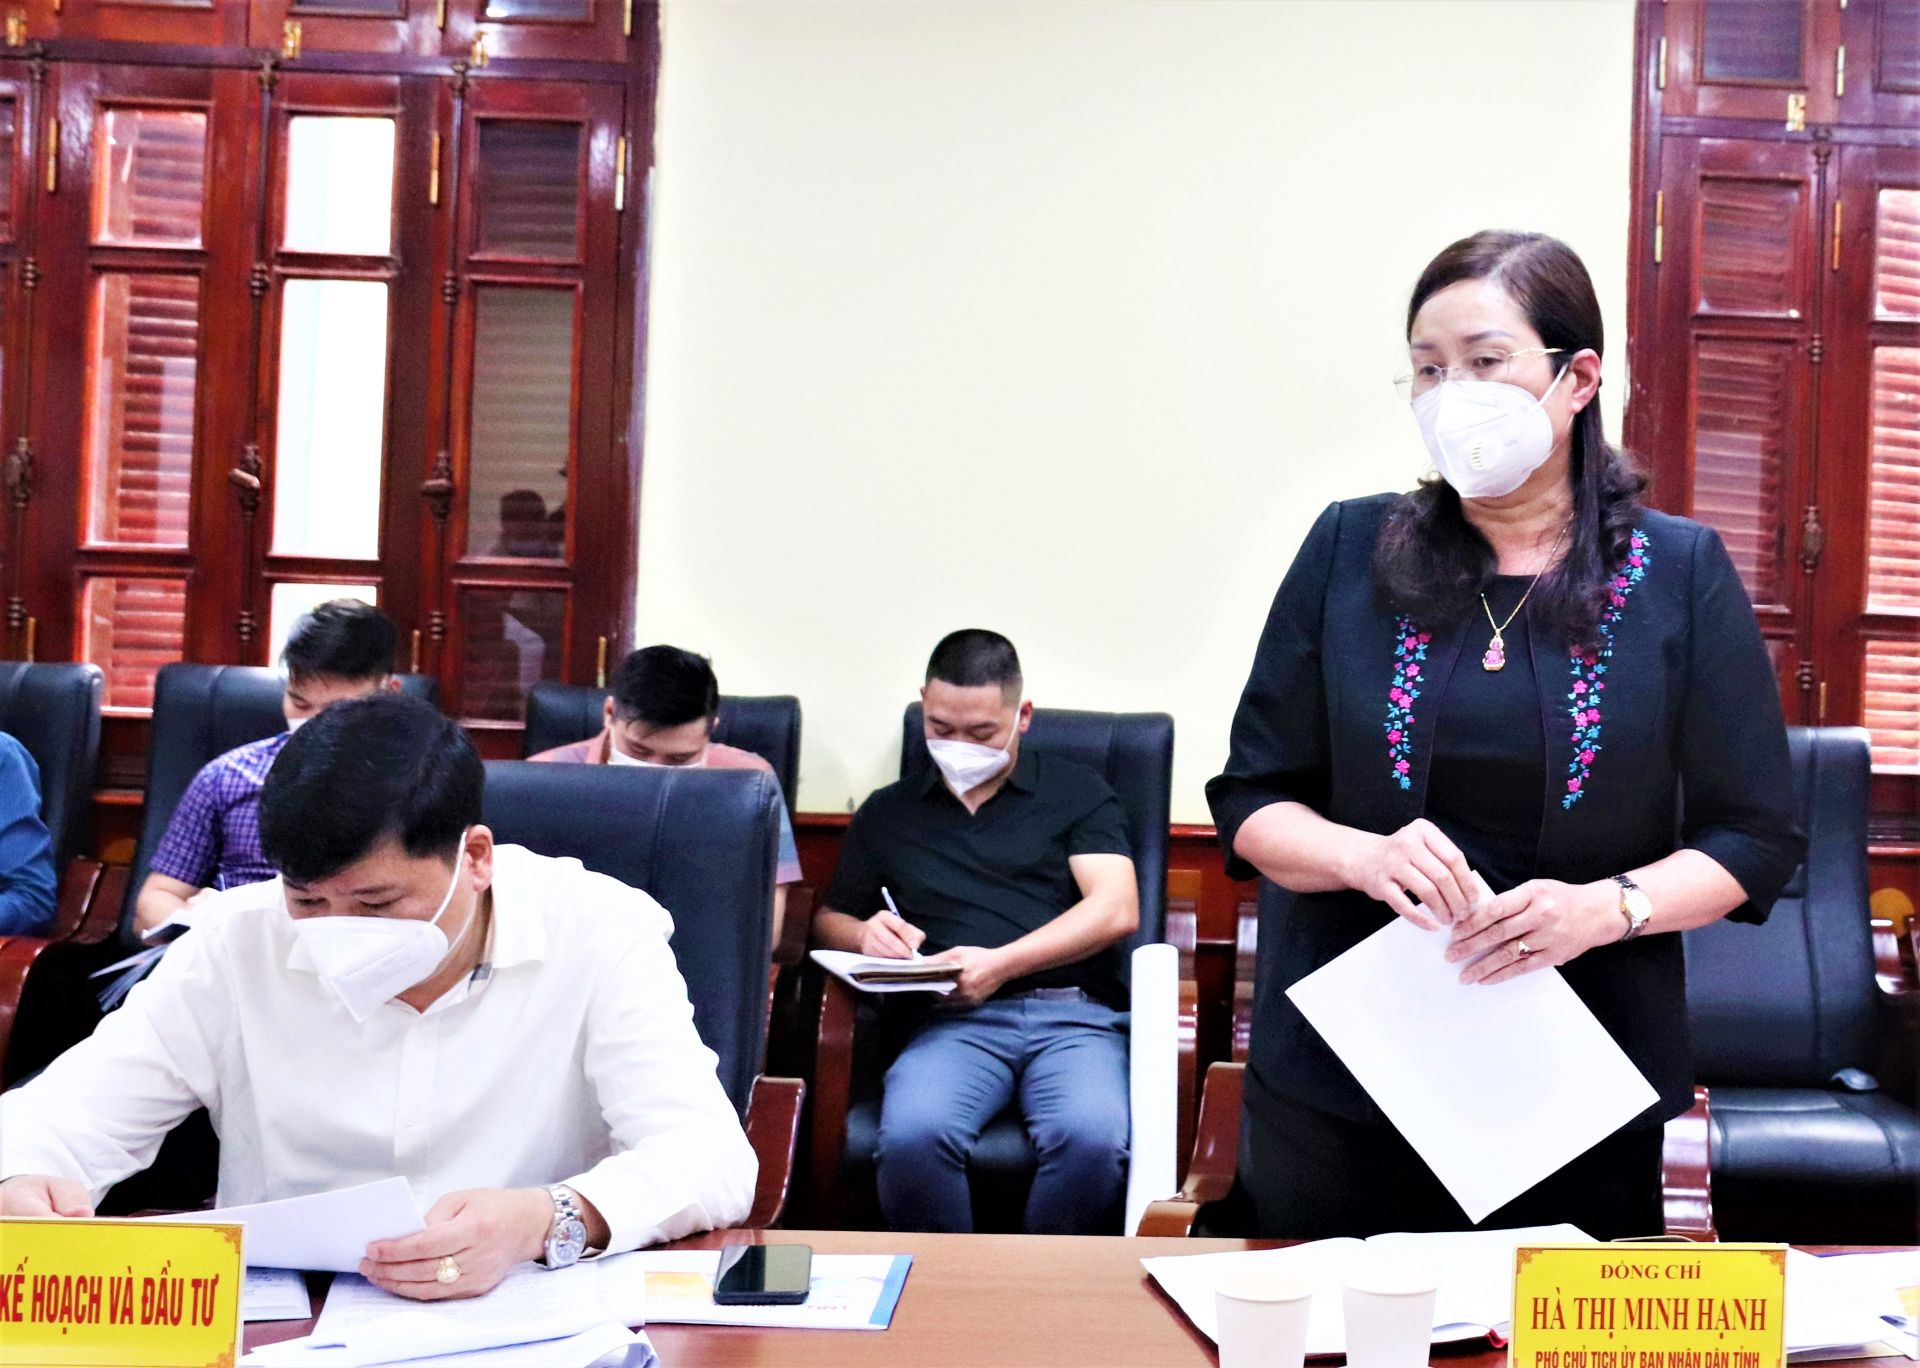 Phó Chủ tịch UBND tỉnh Hà Thị Minh Hạnh đề nghị các sở, ngành, địa phương tiếp tục đồng hành với doanh nghiệp, kịp thời tháo gỡ khó khăn, đẩy nhanh tiến độ thực hiện các dự án.